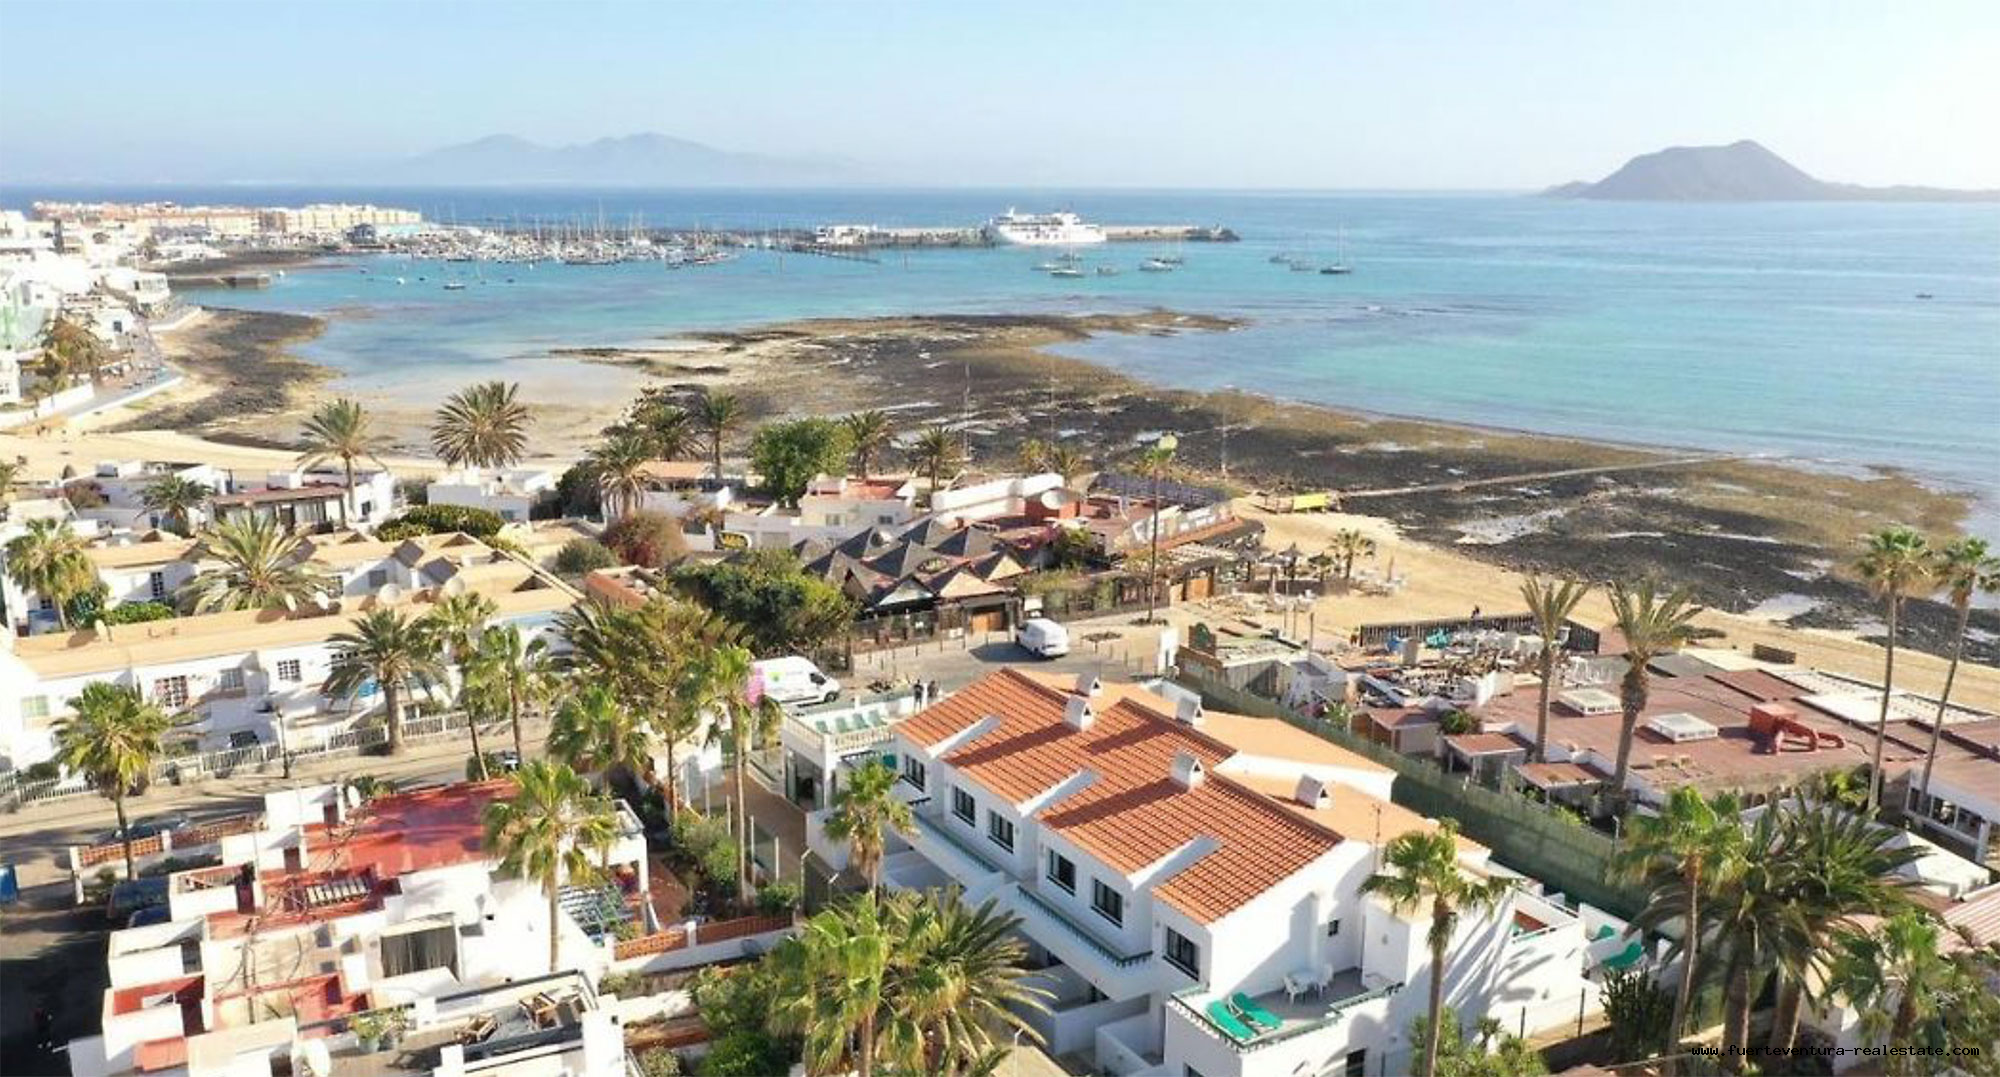 In vendita! Un complesso turistico con 14 appartamenti e piscina a Corralejo, Fuerteventura!